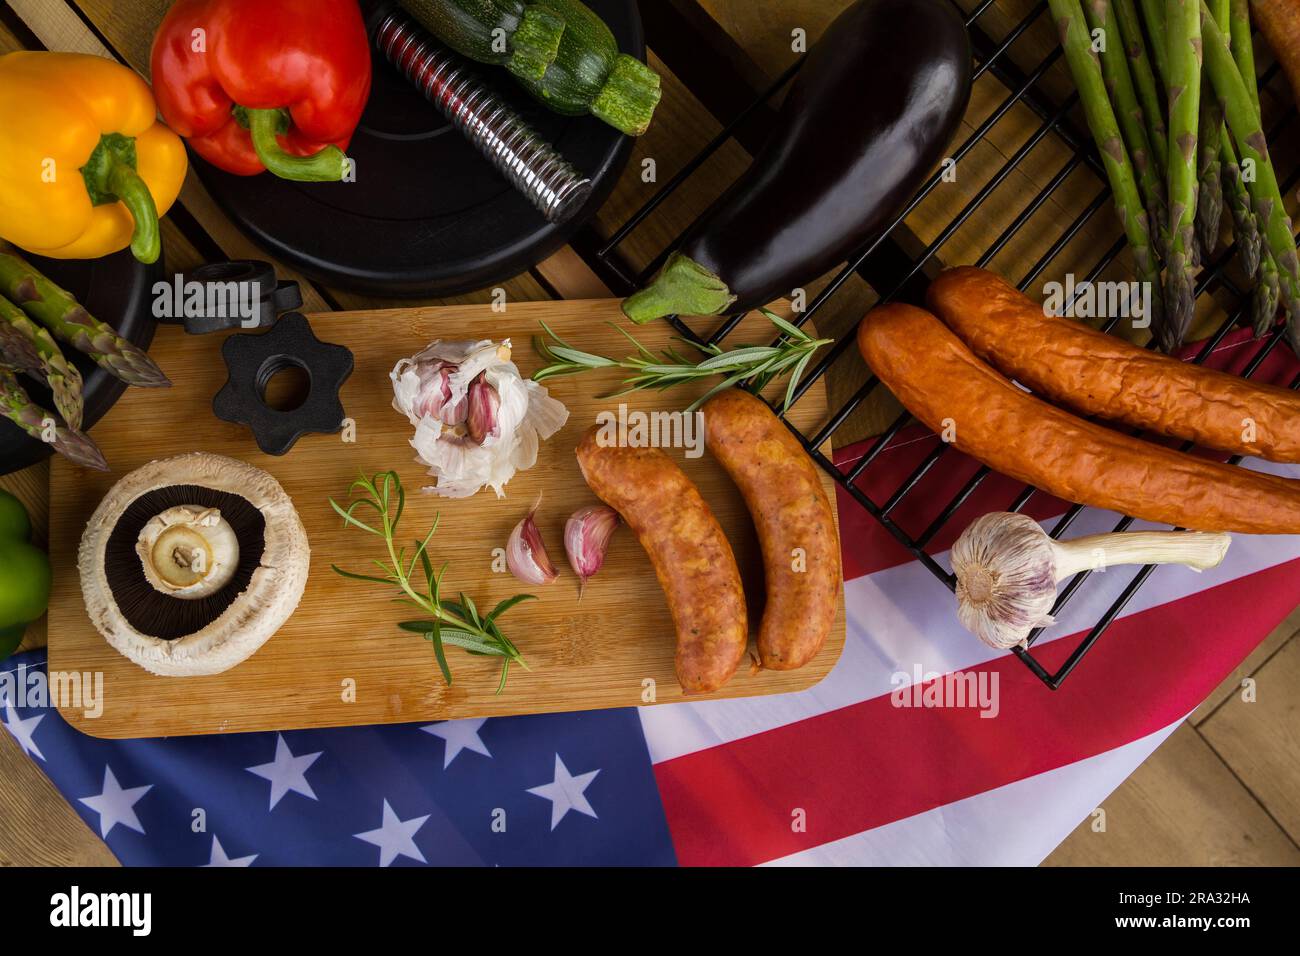 Manubri da palestra, cibo e bandiera degli Stati Uniti d'America. Concezione del barbecue per festeggiare il 4 luglio il giorno dell'indipendenza negli Stati Uniti. Foto Stock